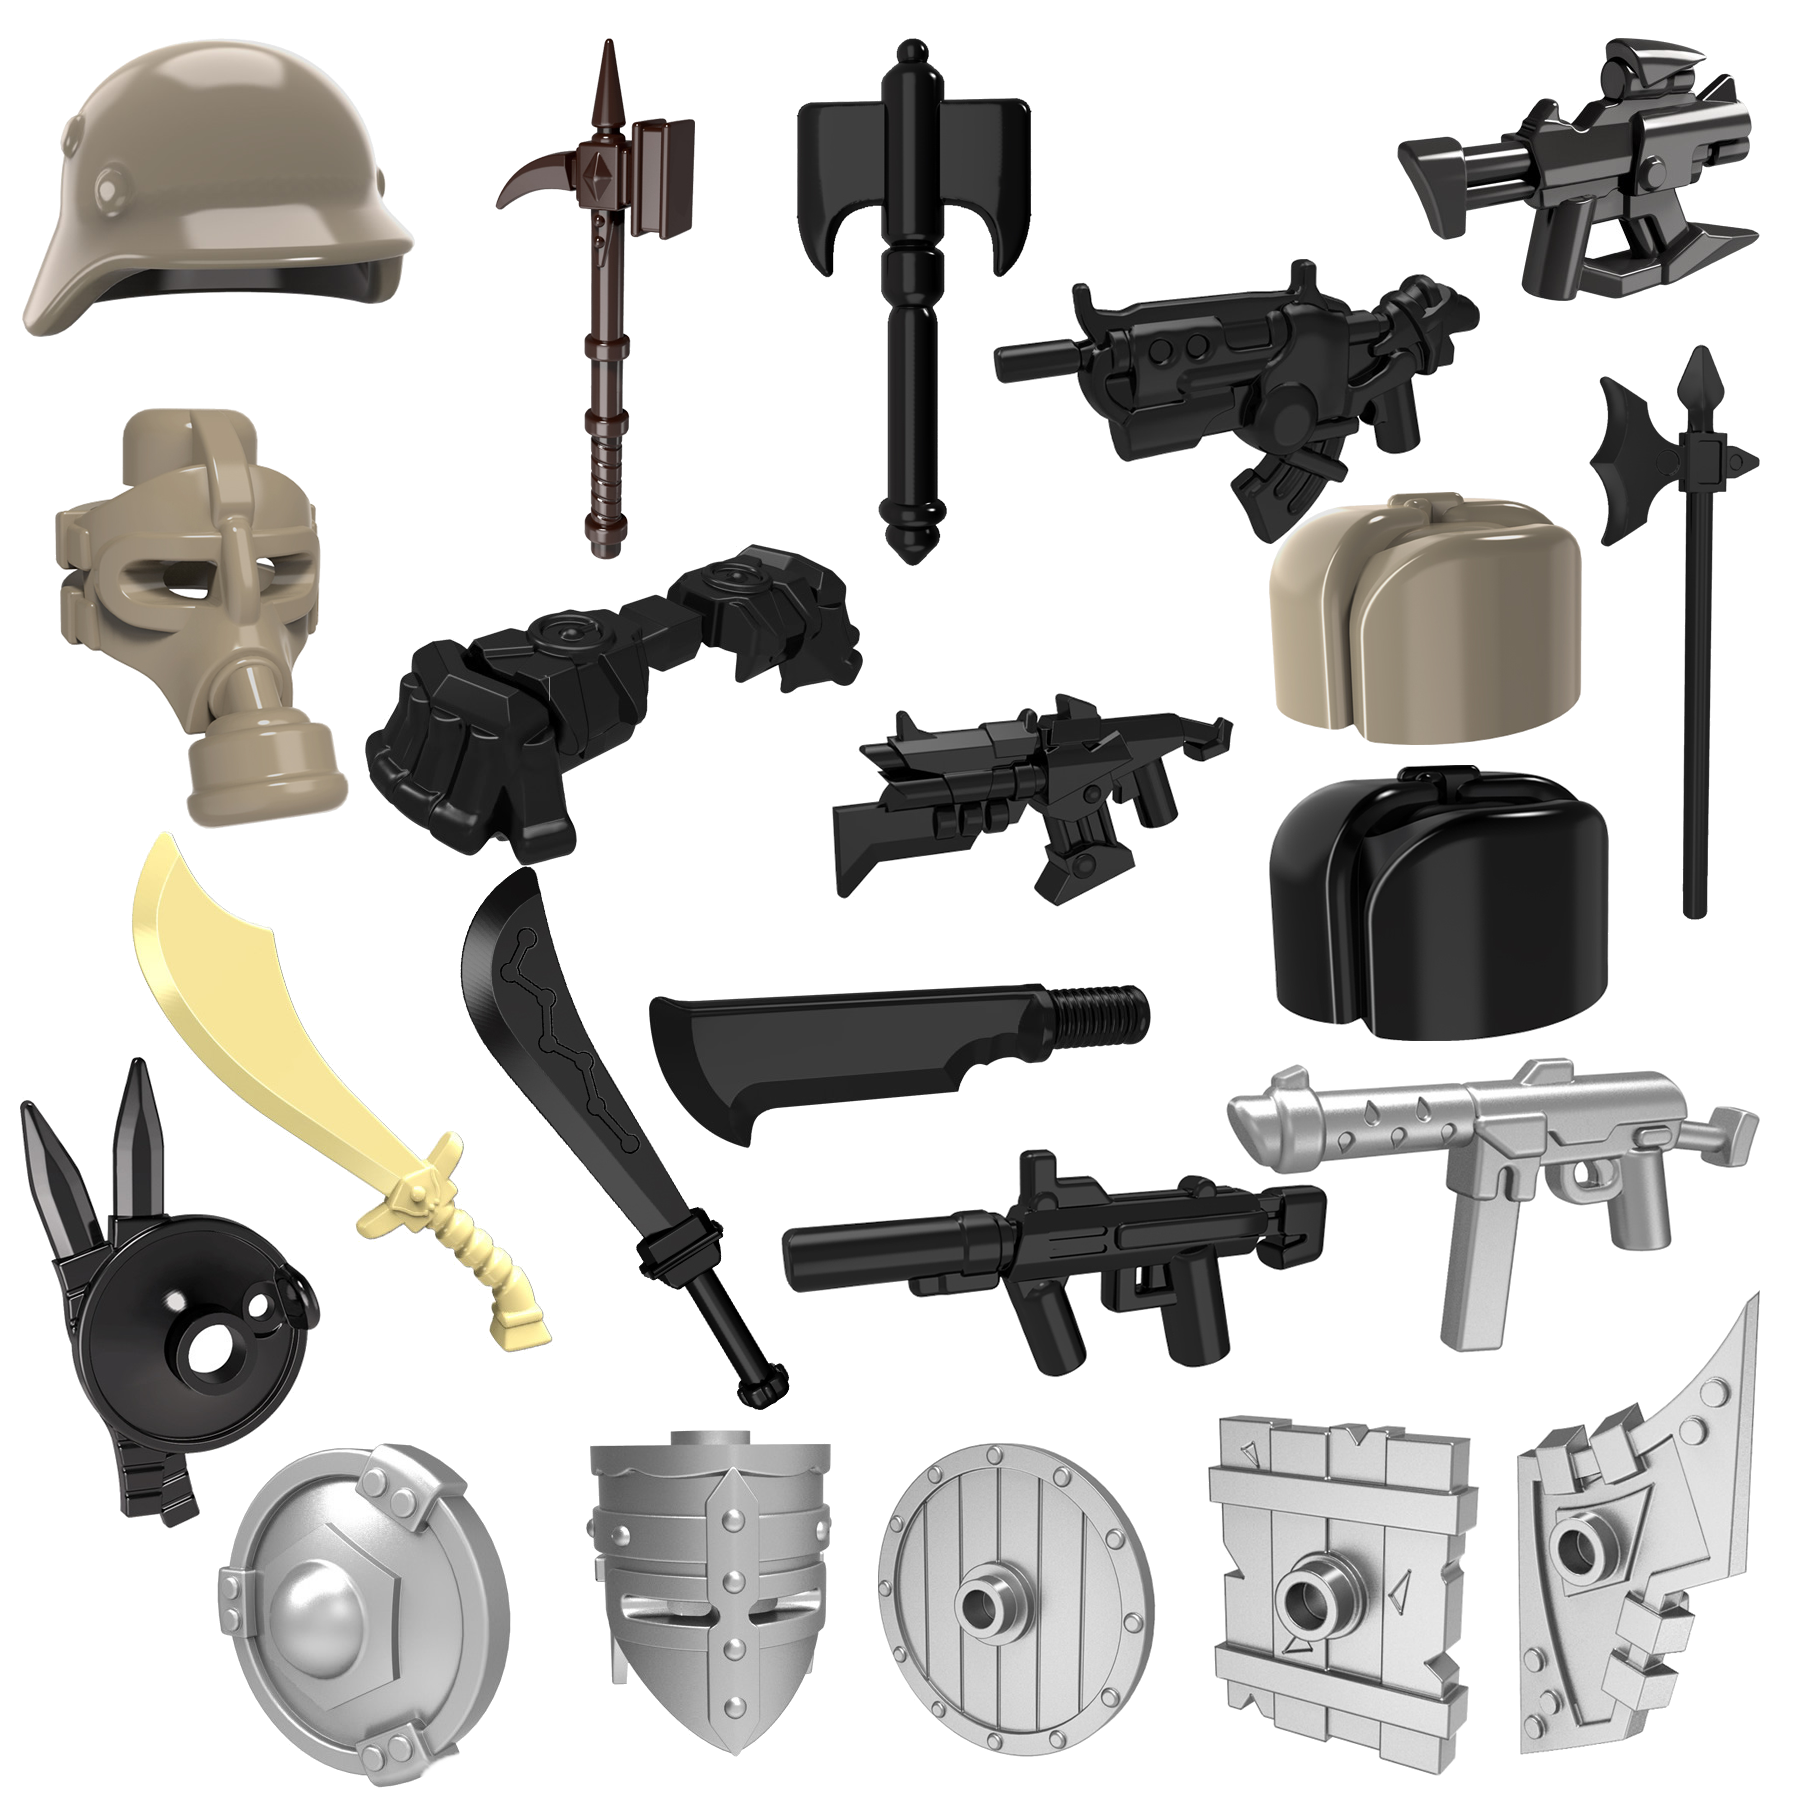 兼容乐高小人仔玩具中古罗马士兵军事武器配件头盔枪积木拼装玩具